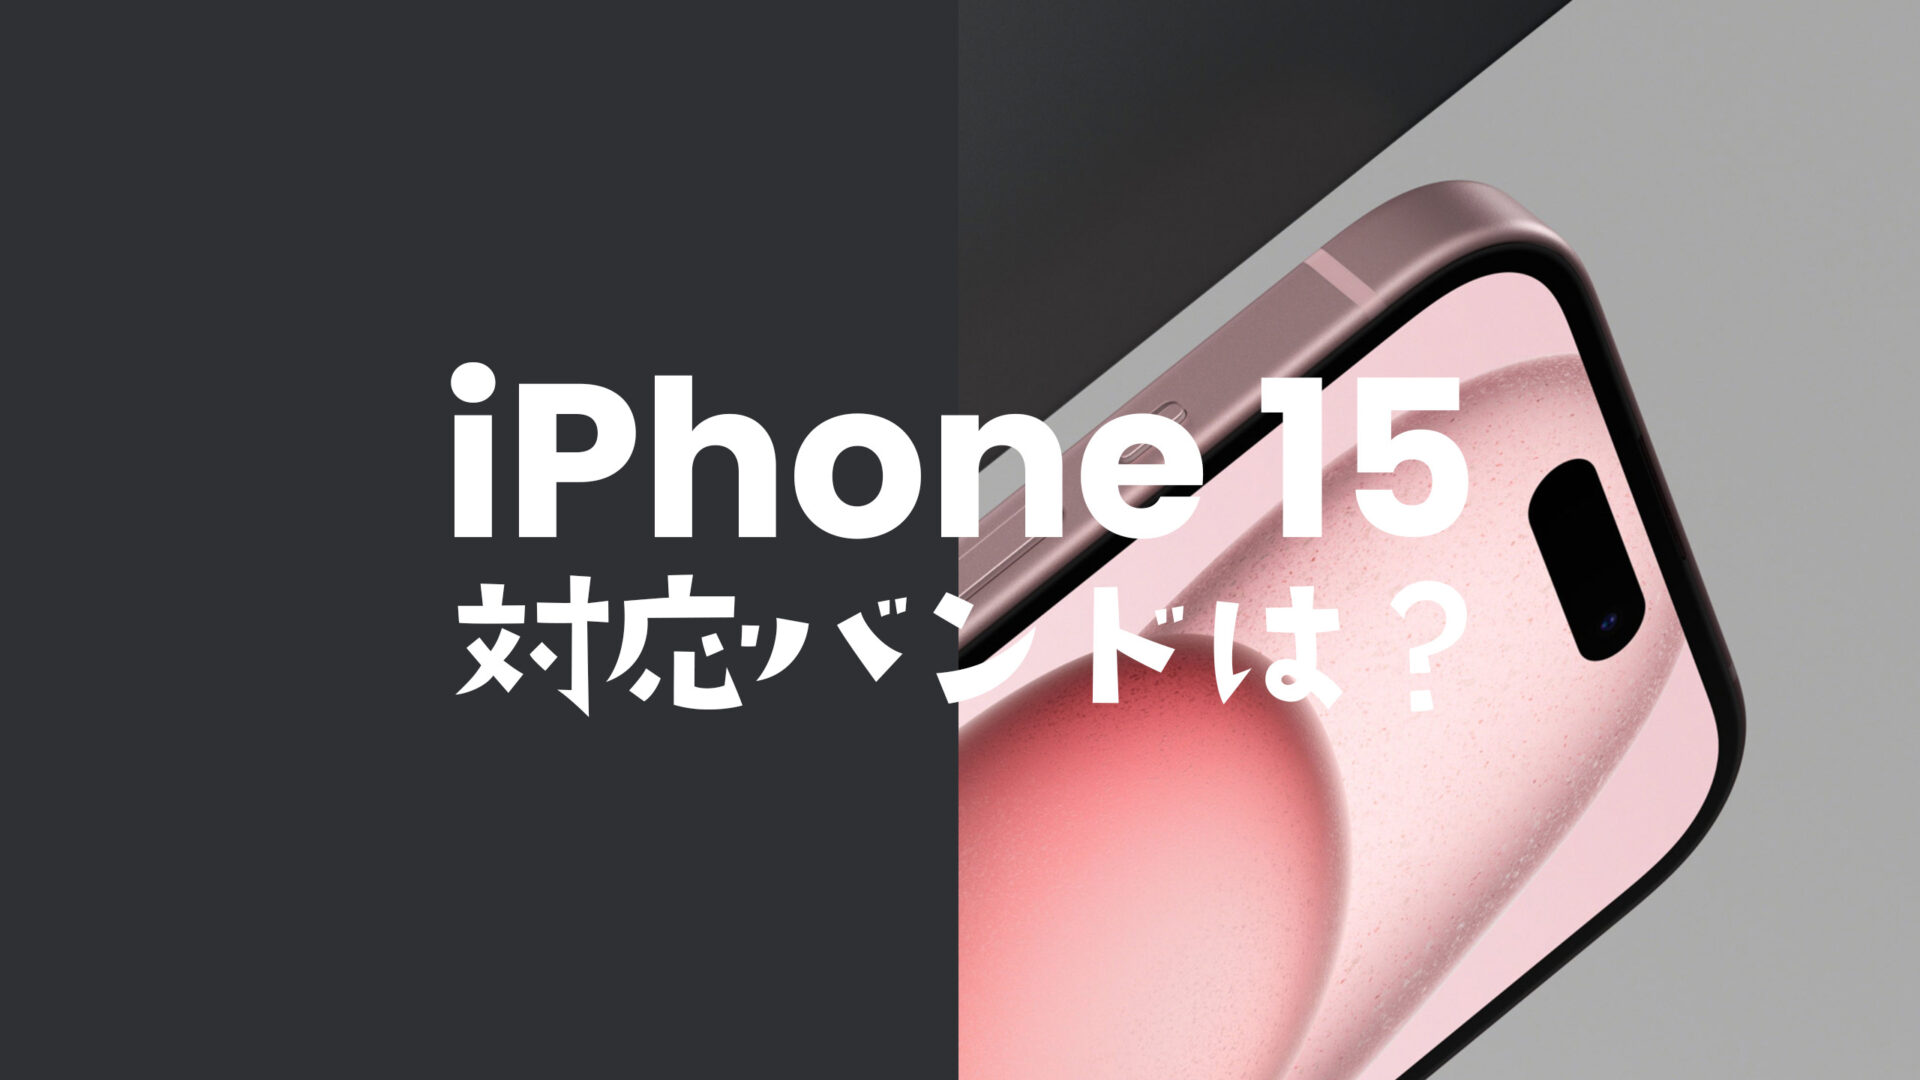 iPhone 15/15 Proは4G回線が使える。対応バンド(周波数帯&電波帯)は？のサムネイル画像